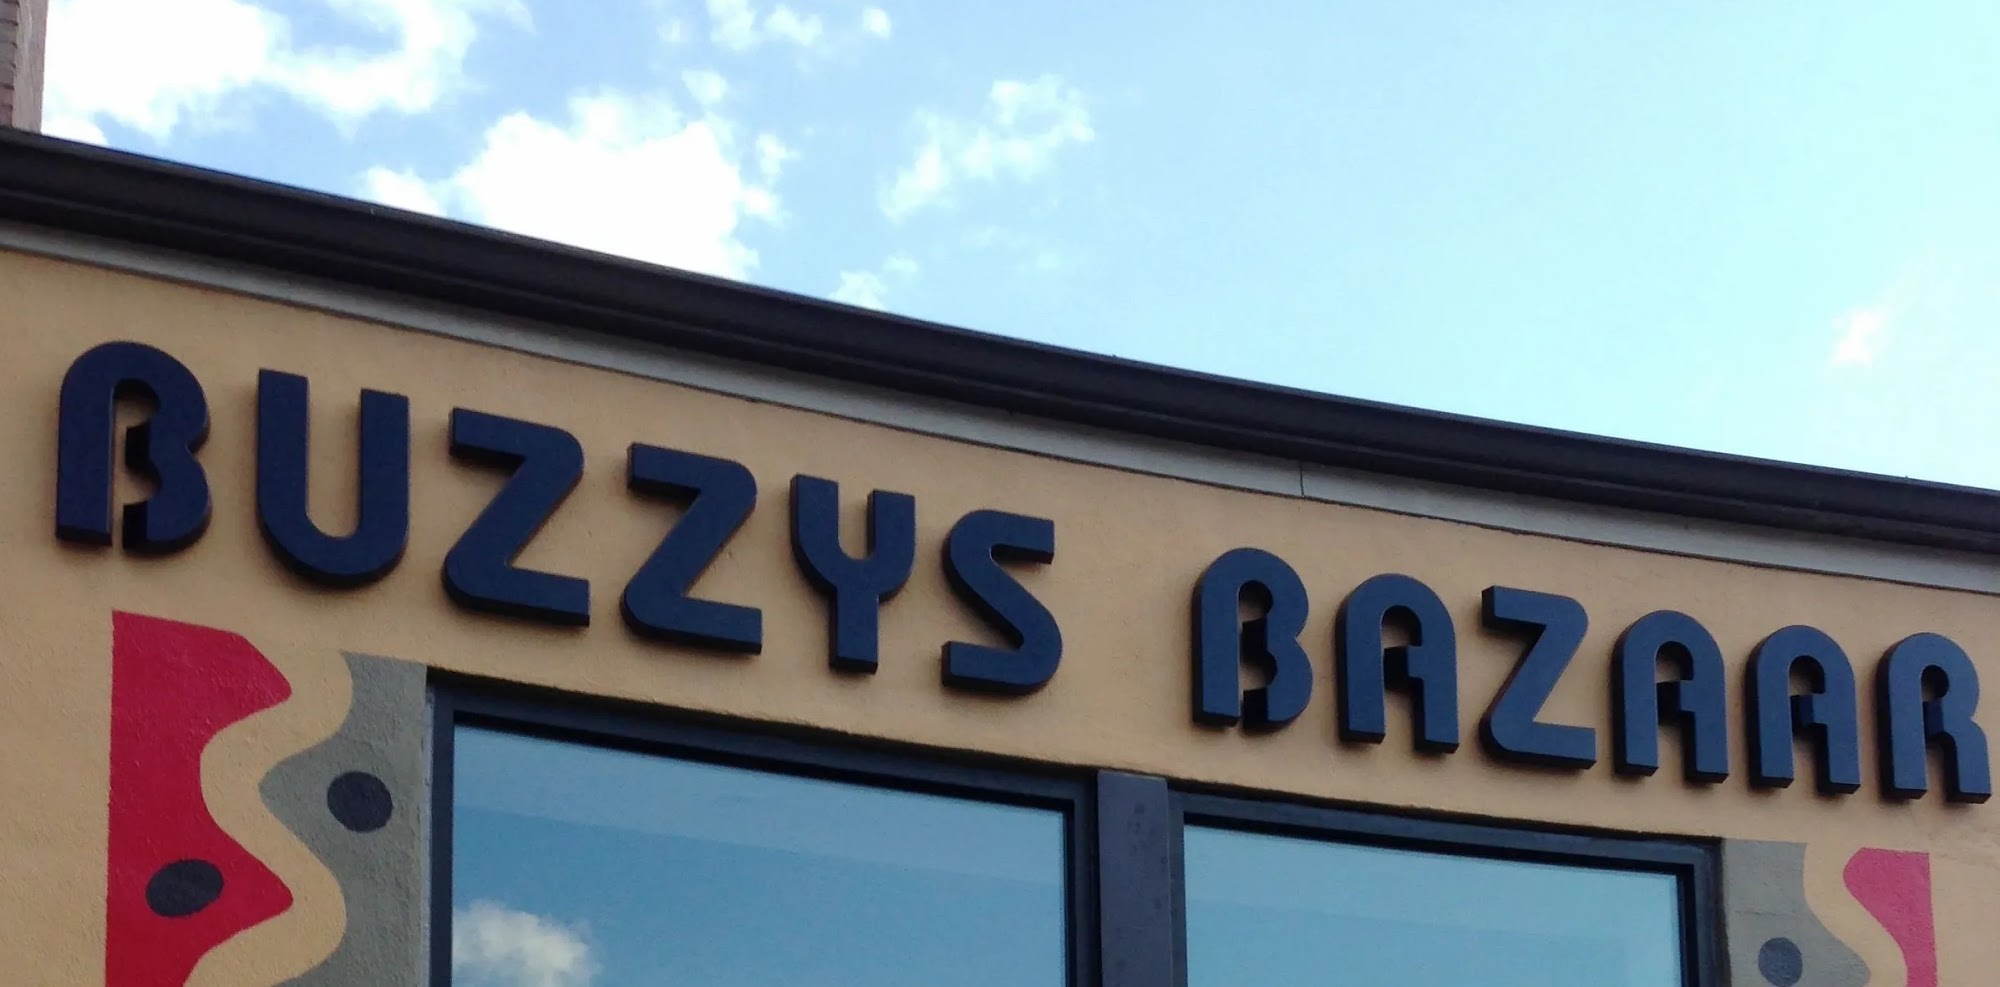 Buzzy's Bazaar